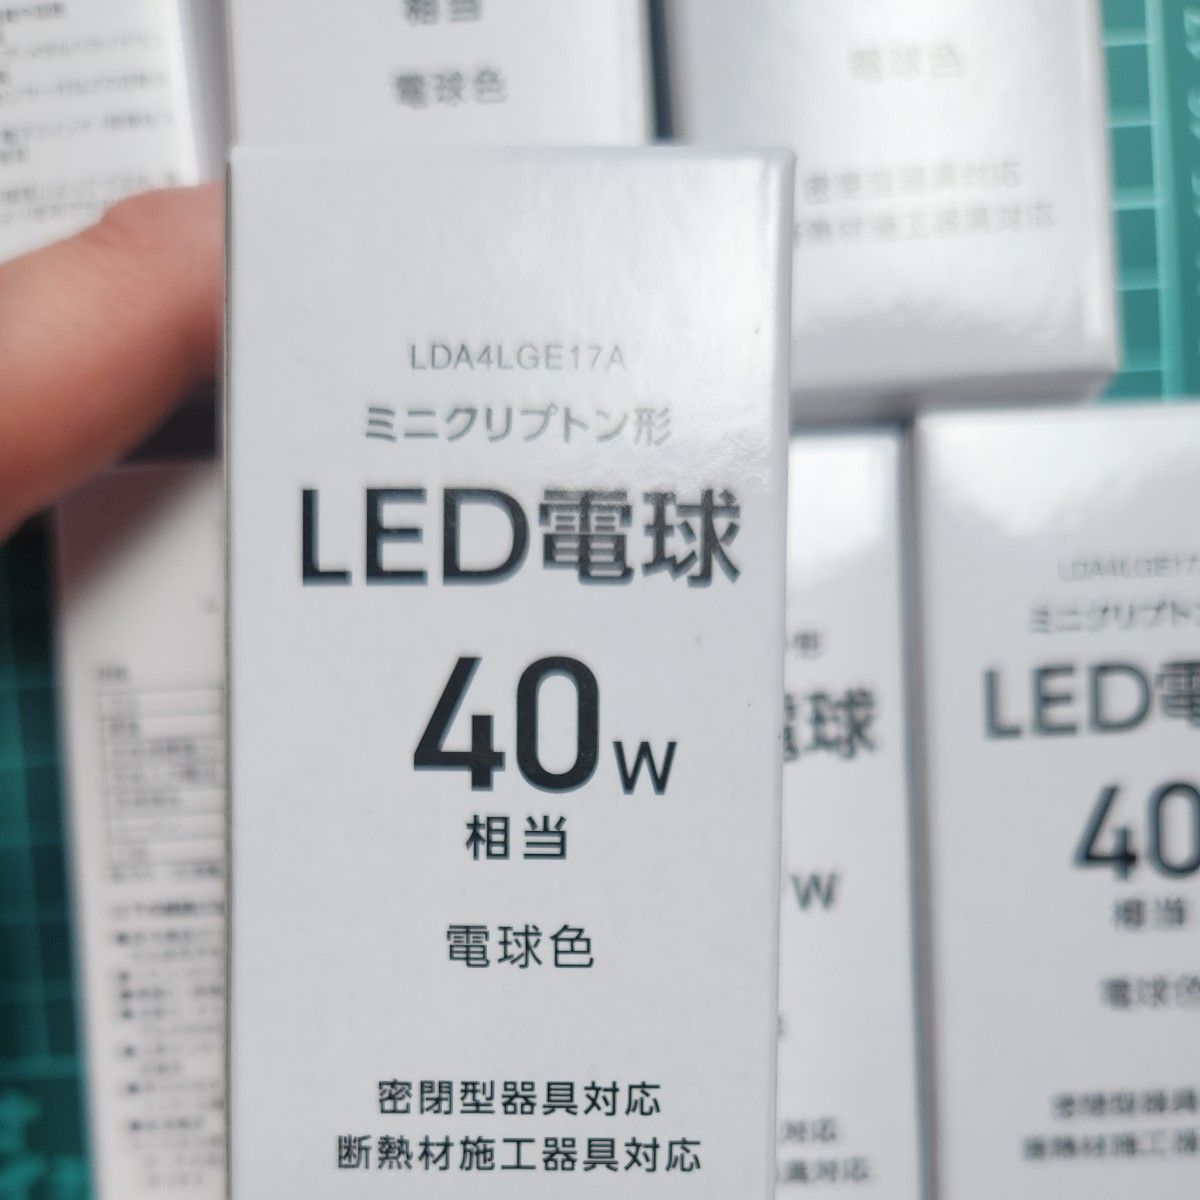 LED電球 YAZAWALDA4LGEITA 100V 50/60Hz TZW 4.1W S 7つ